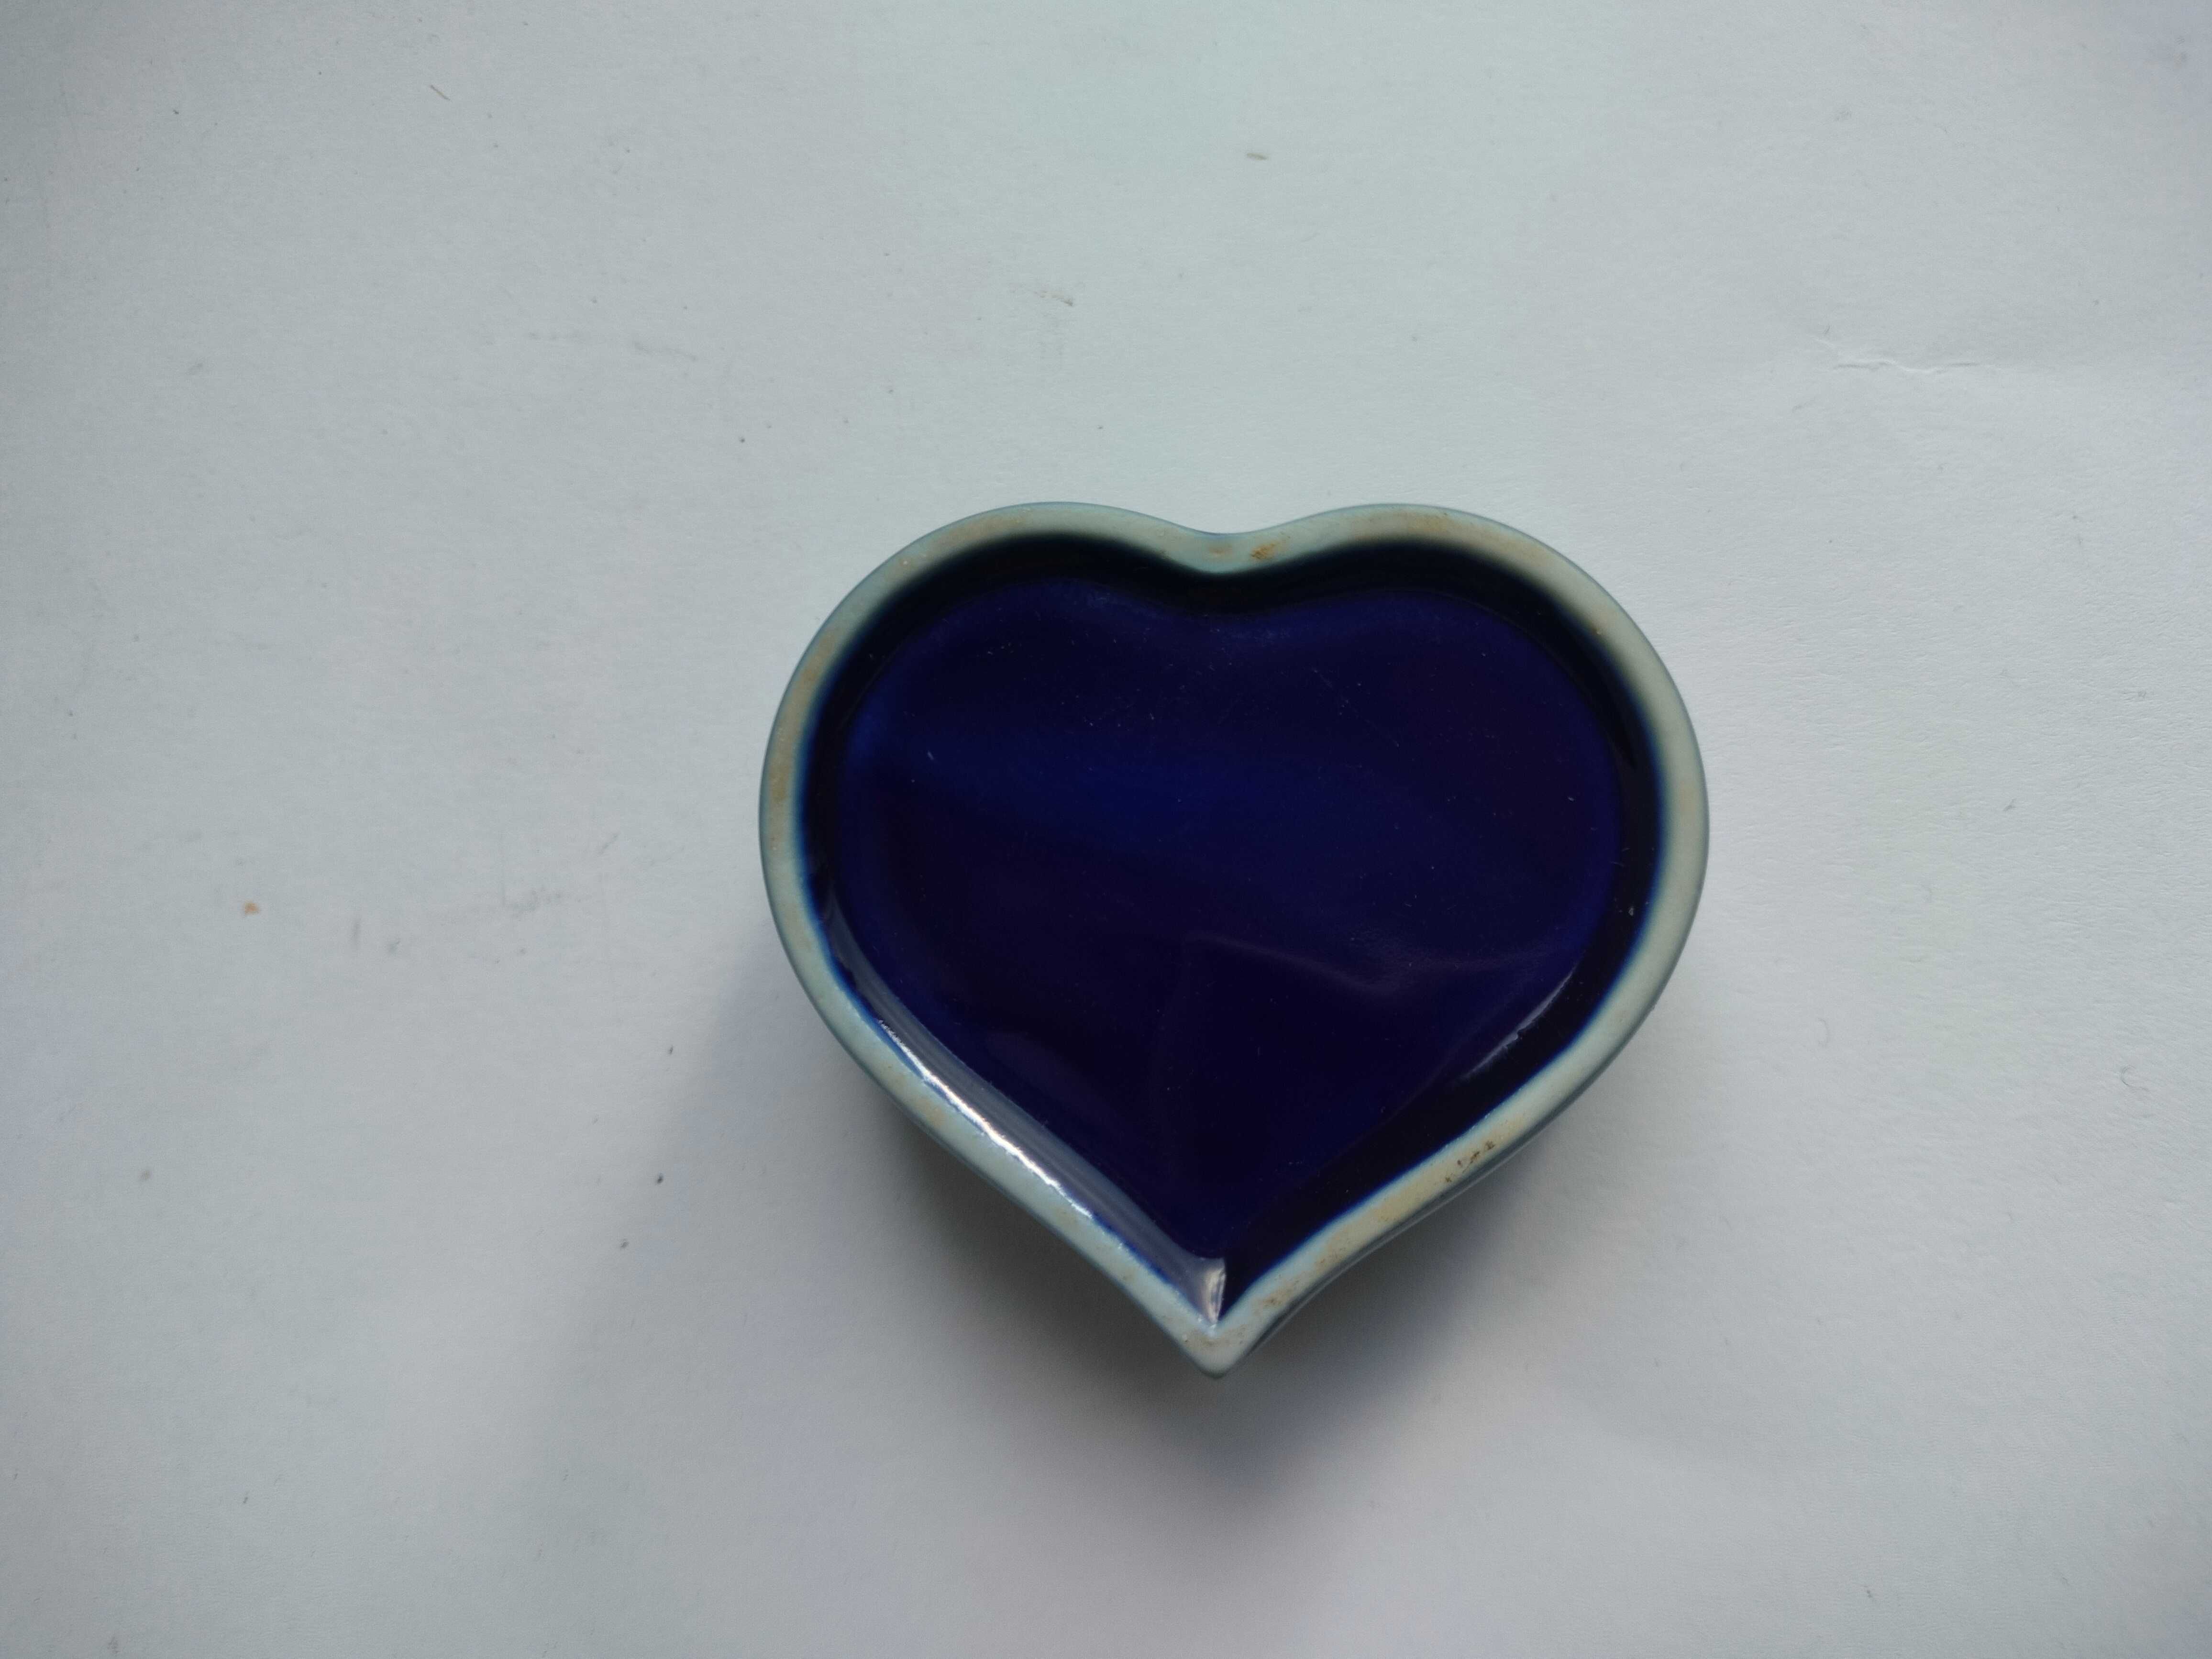 Maleńka granatowa ceramiczna miseczka w kształcie serca, pojemniczek